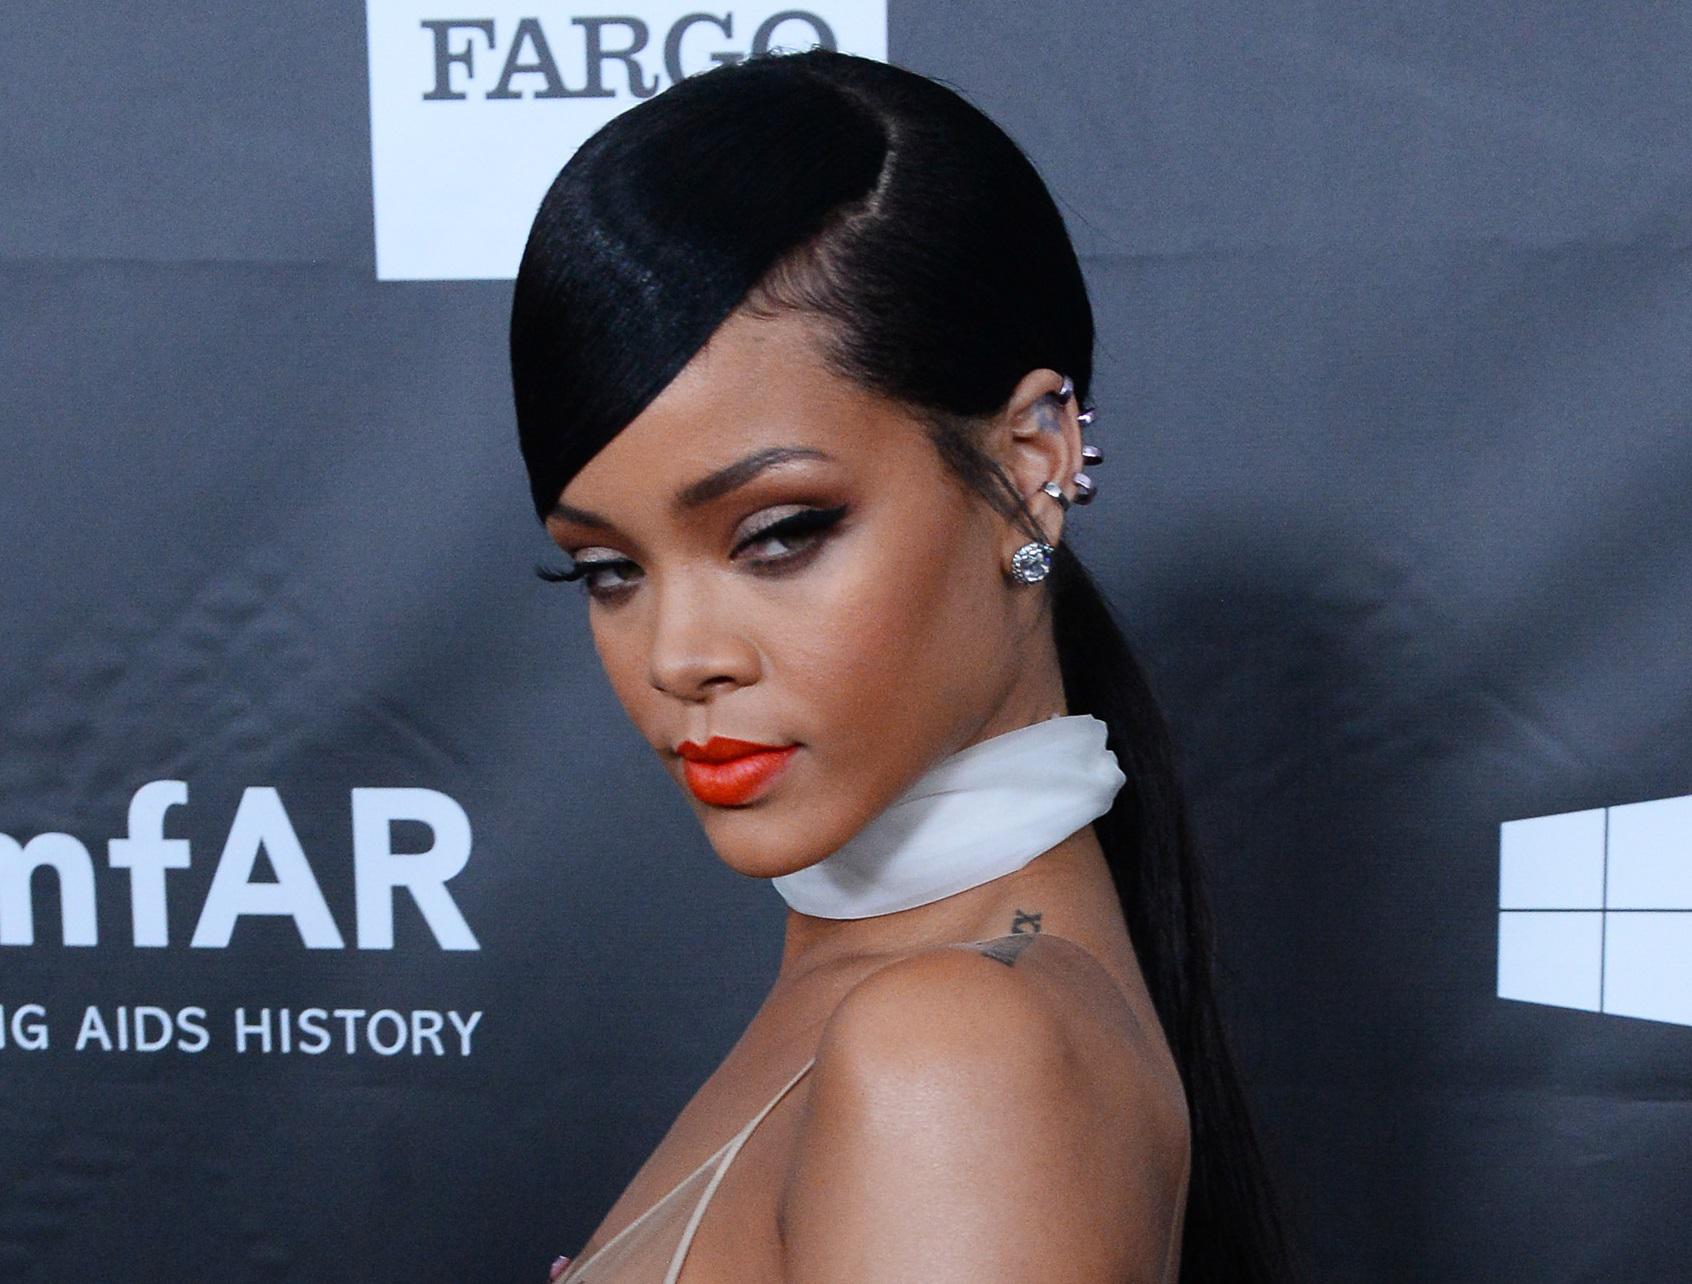 Rihannaqui con un lipstick arancio scelto da chi vuole farsi notare "Sai quello che vuoi e come ottenerlo" spiega la psicologa